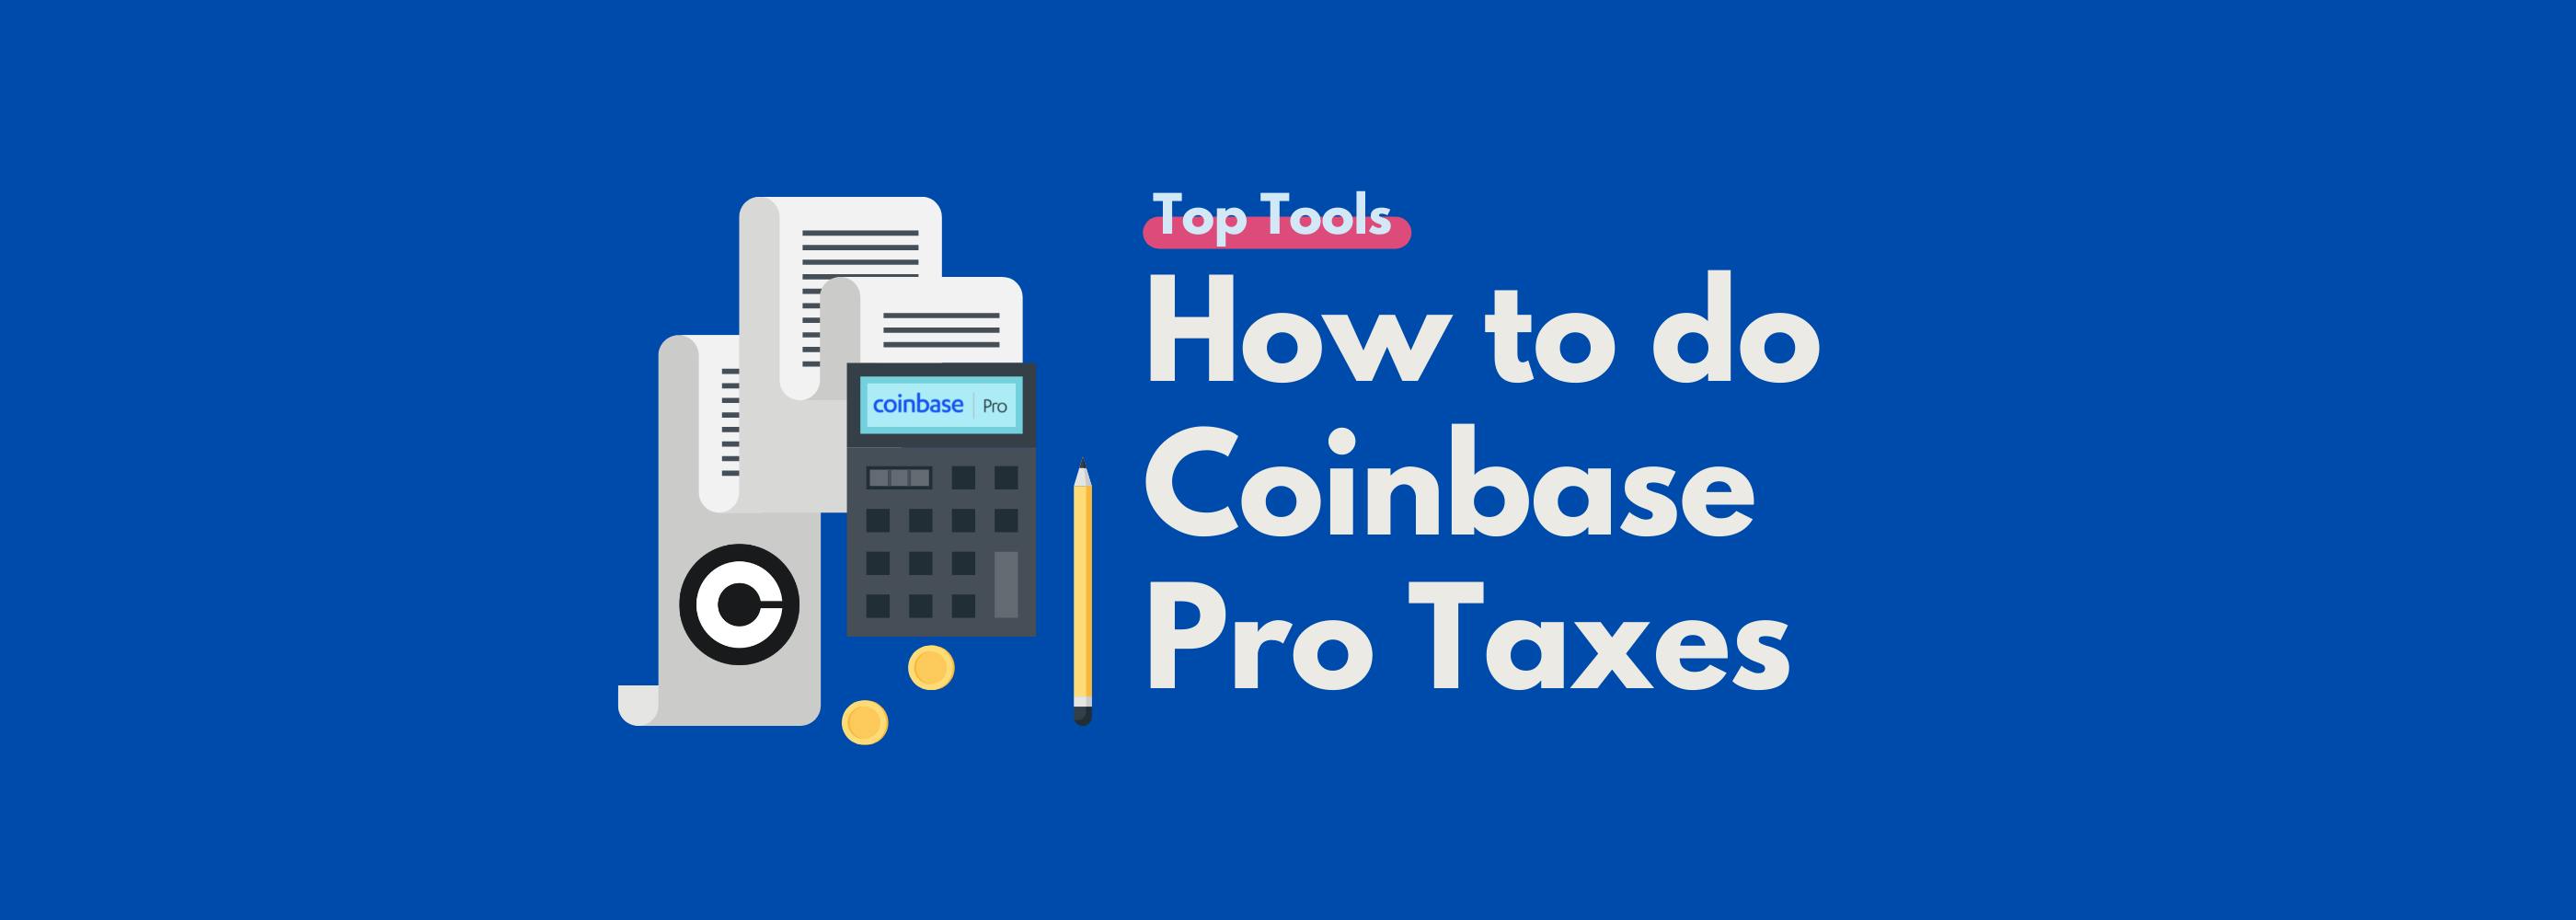 Coinbase Pro Taxes